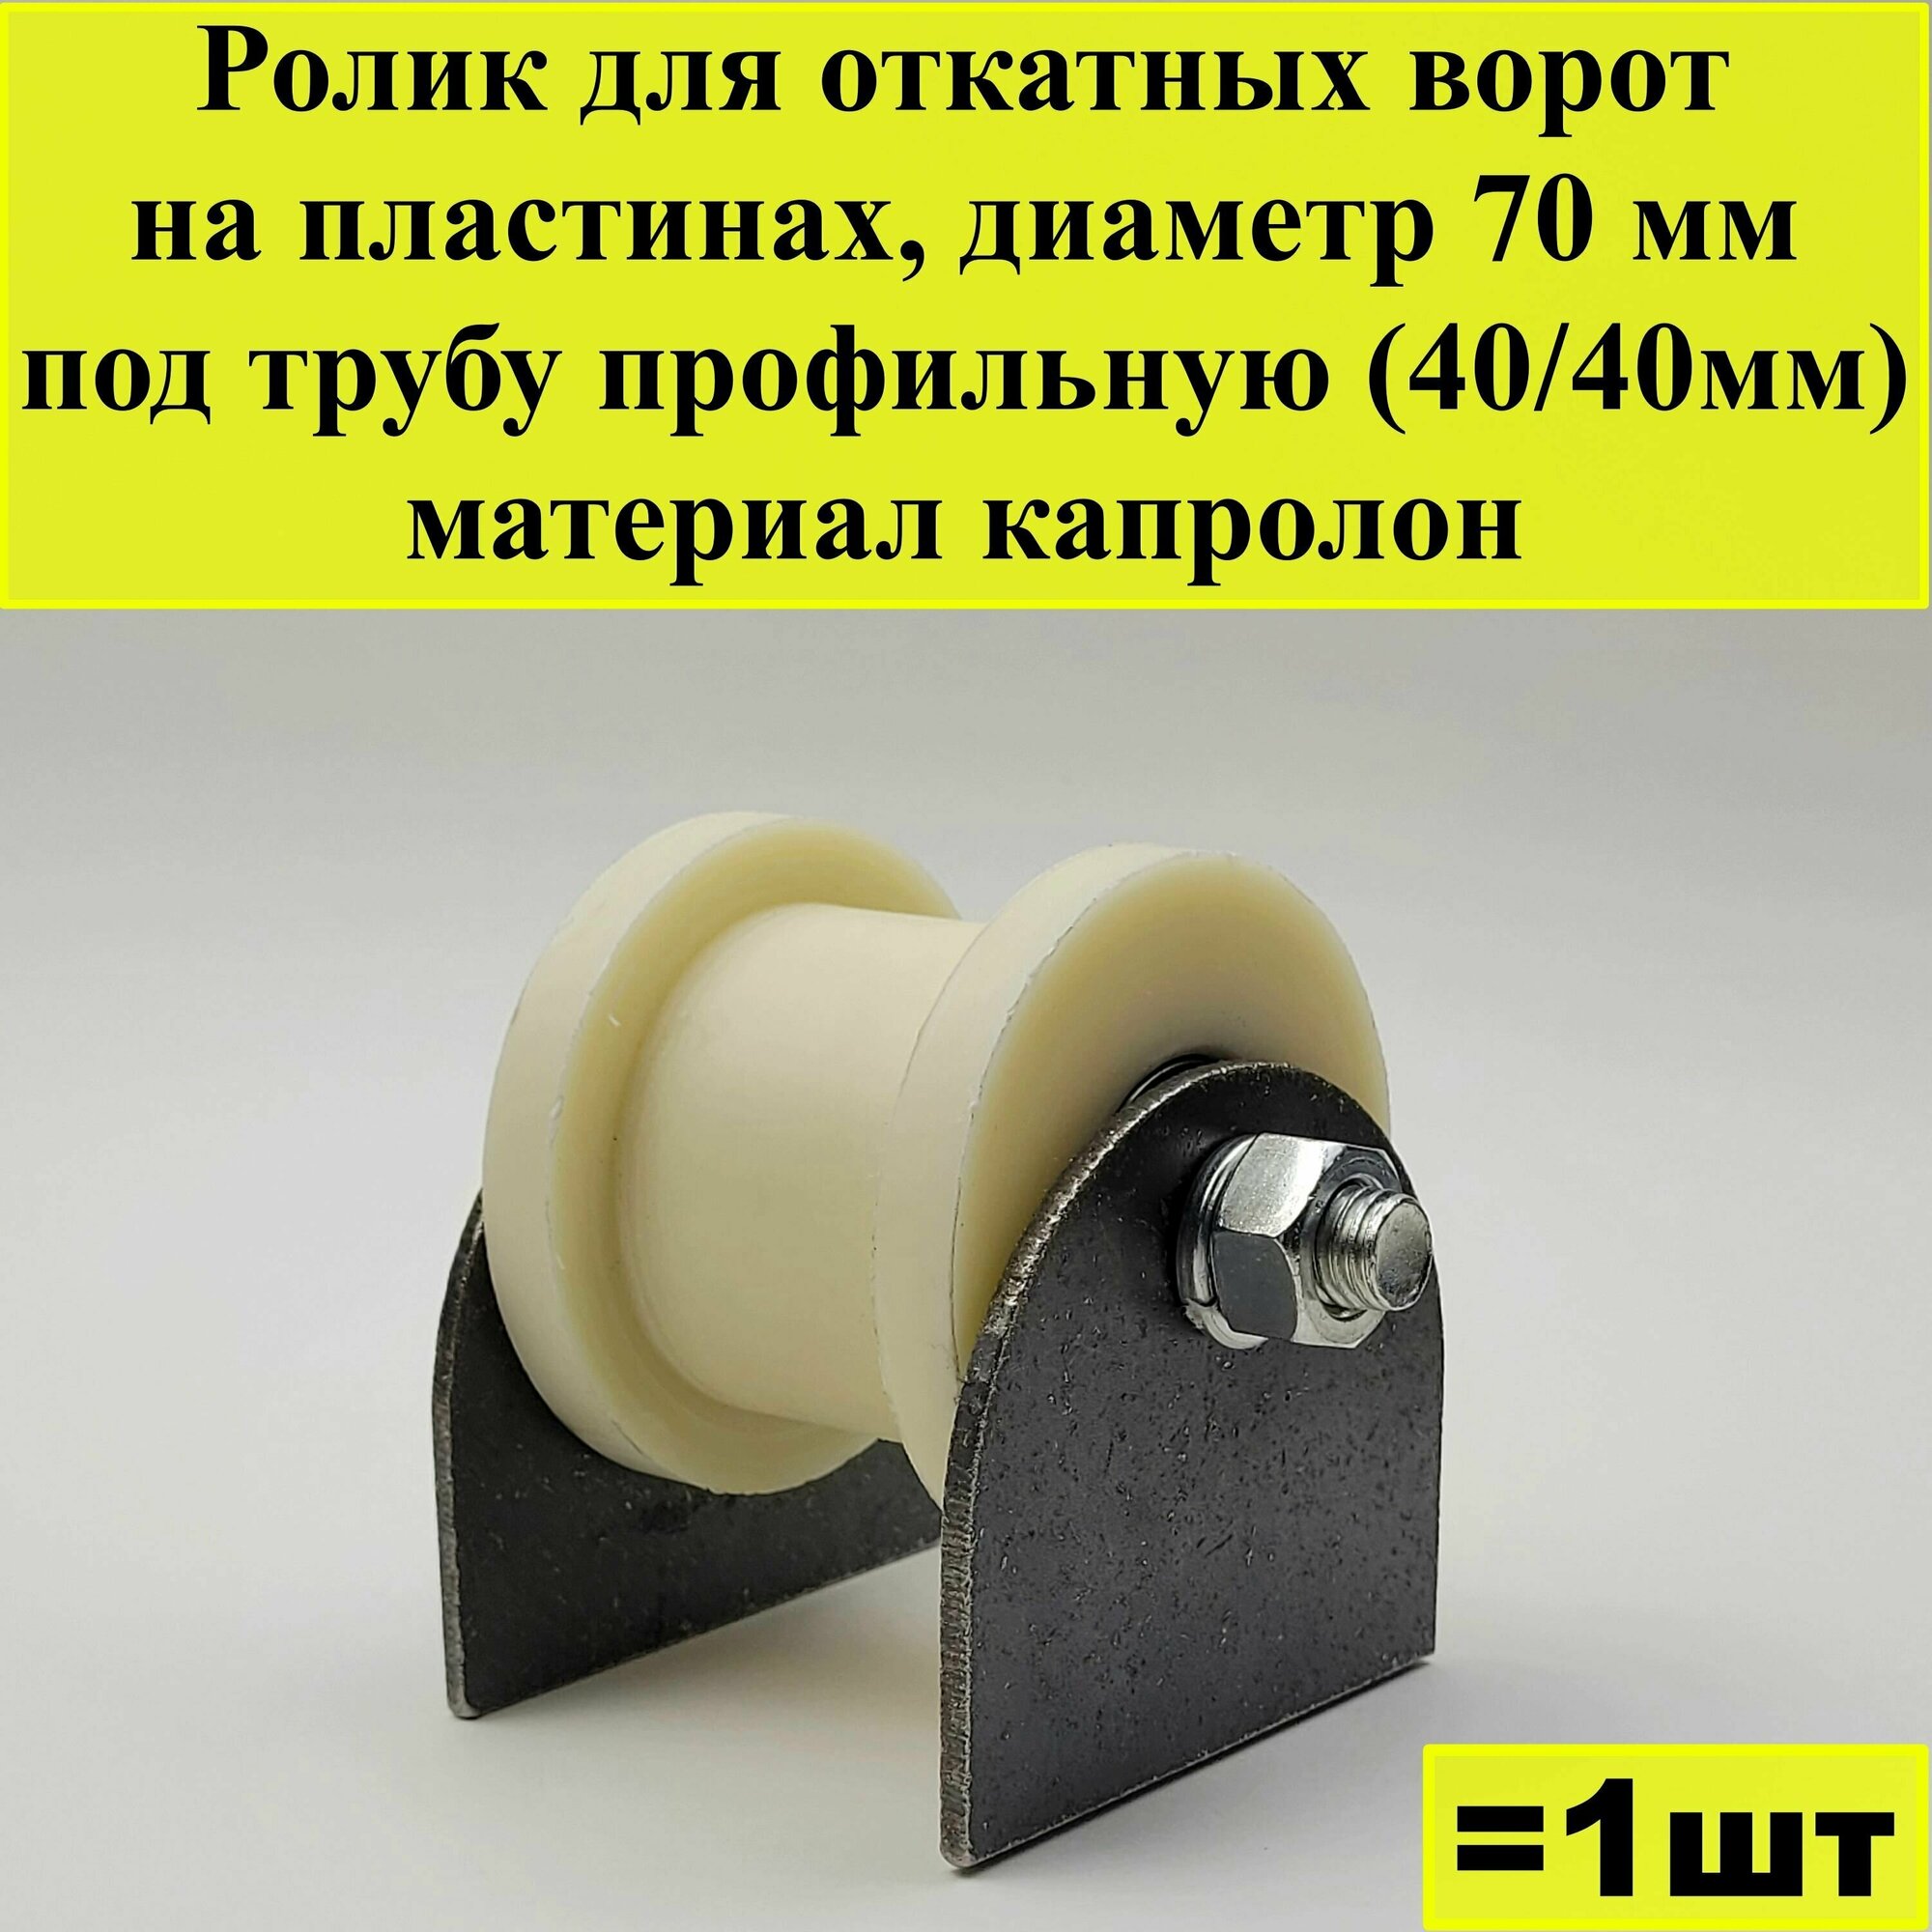 Ролик для откатных ворот на пластинах диаметр 70 мм под трубу профильную (40/40мм) материал капролон 1 шт